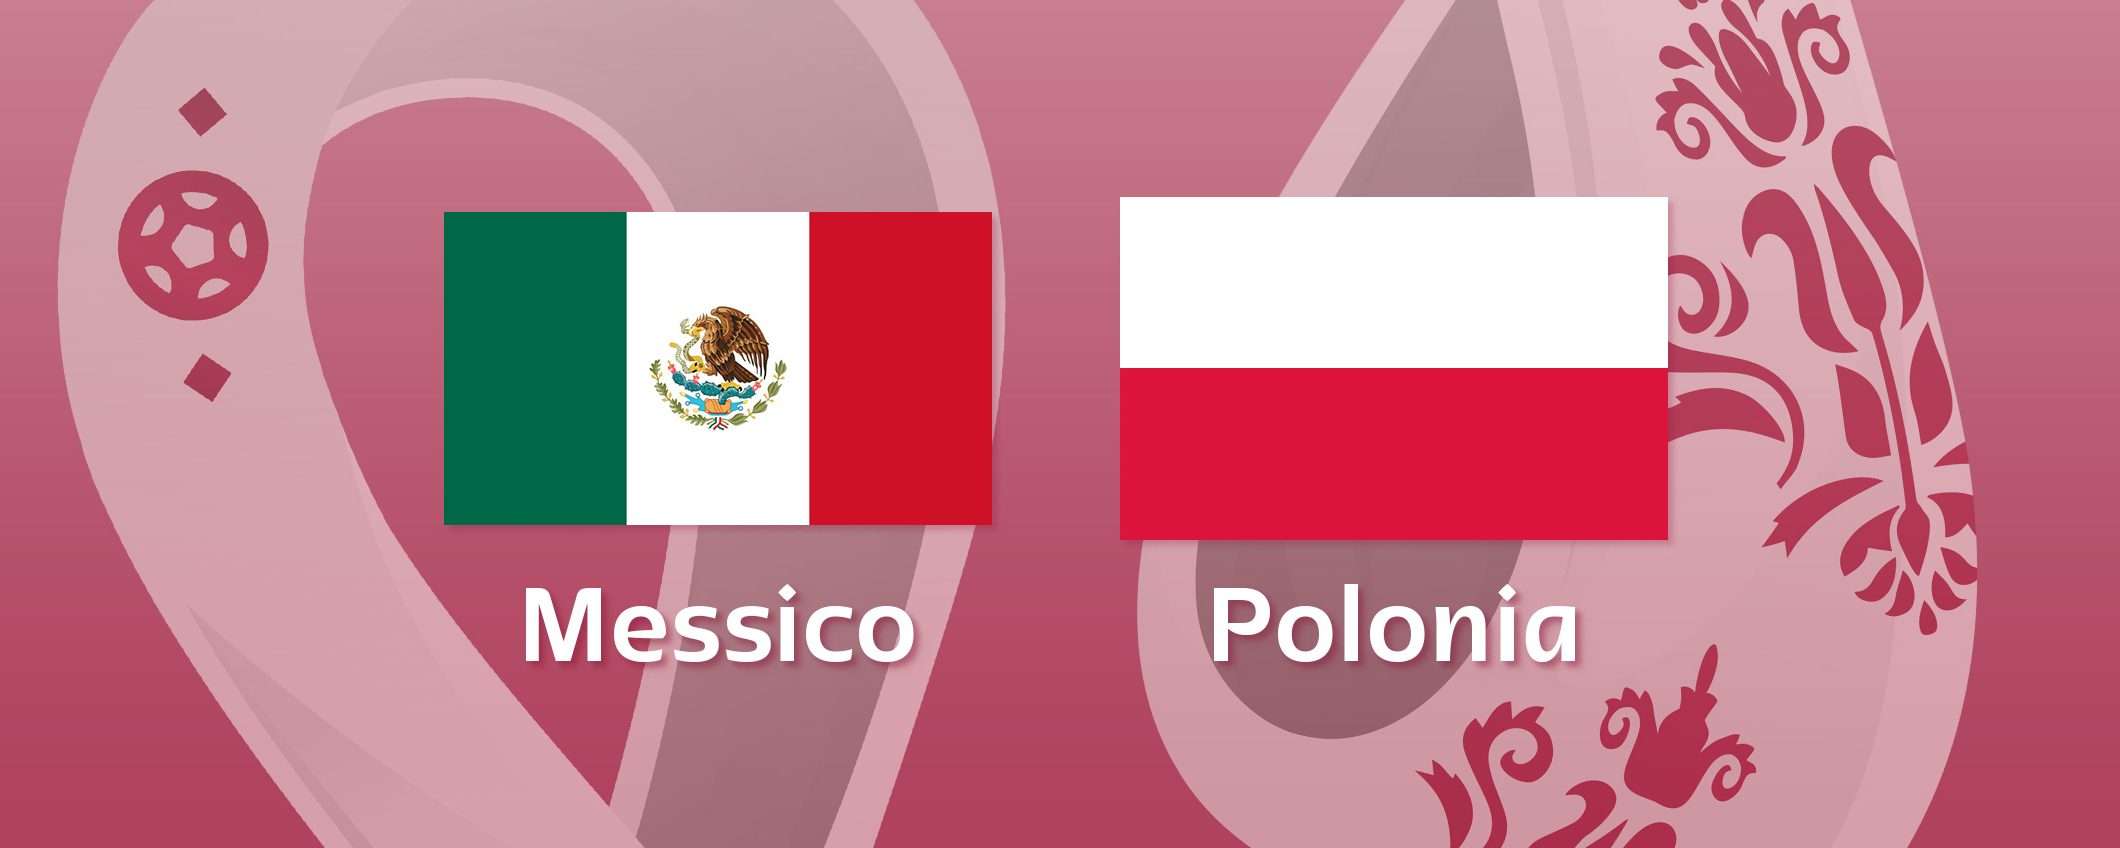 Come vedere Messico-Polonia in streaming (Mondiali)